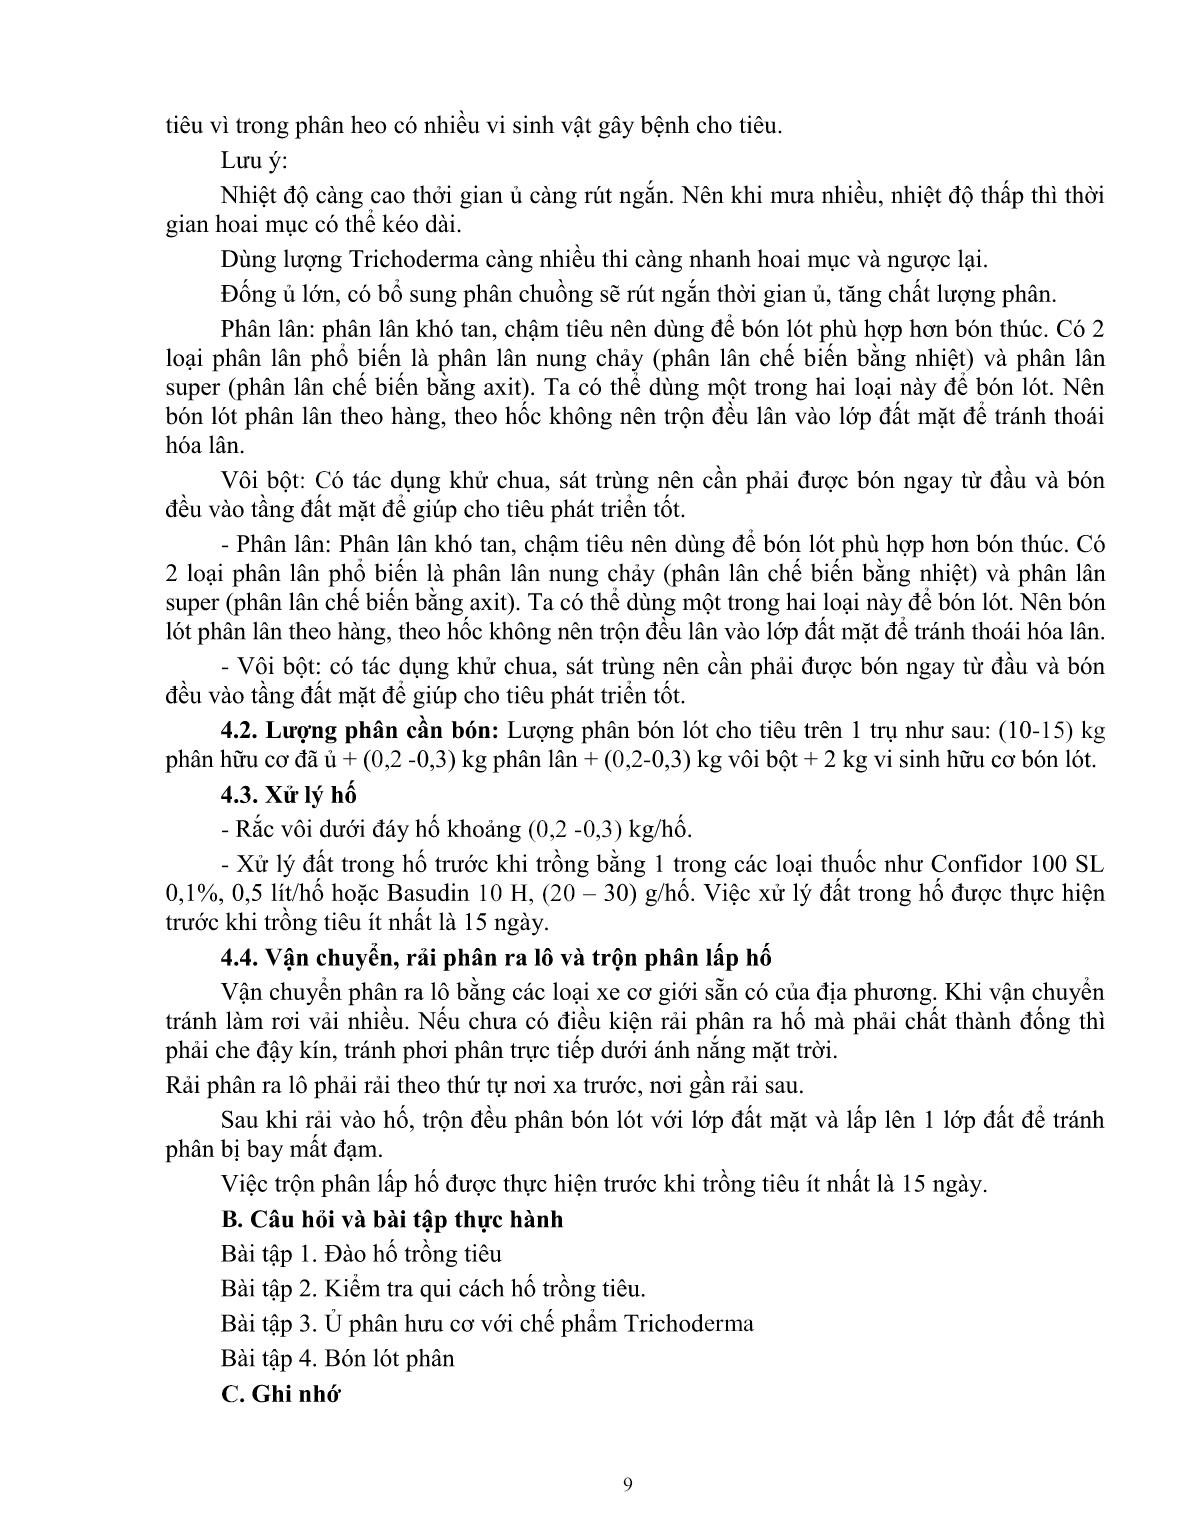 Giáo trình mô đun Trồng và chăm sóc hồ tiêu (Trình độ: Đào tạo dưới 3 tháng) trang 10